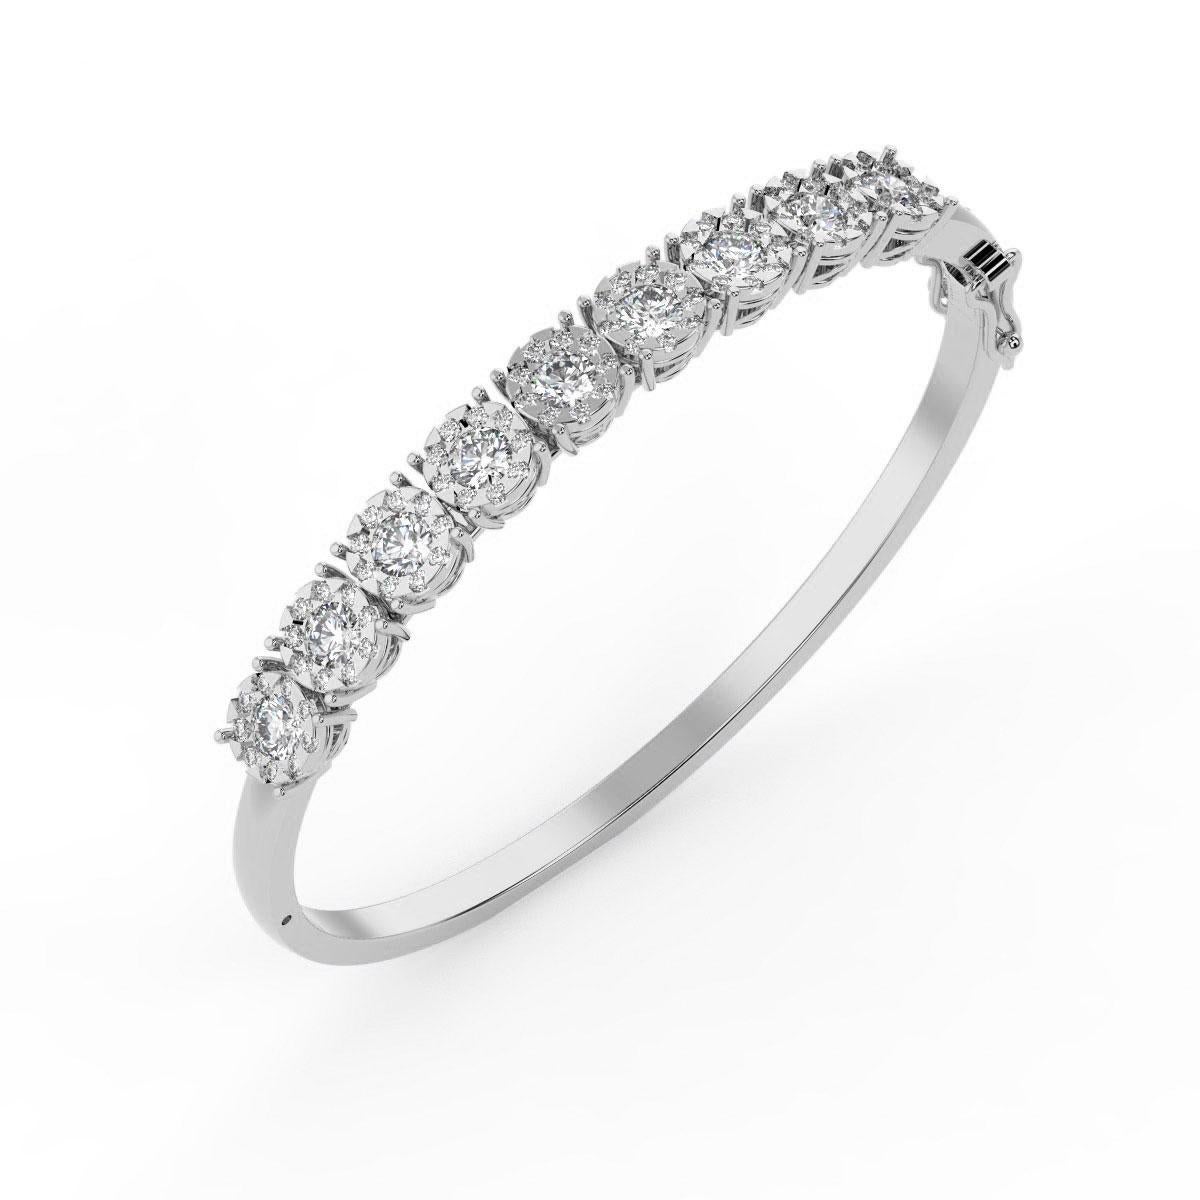 Dieser Diamantarmreif präsentiert zierliche runde Diamanten in 14 Karat Roségold mit einem Gesamtkaratgewicht von 5,00 Karat in Mikrozackenfassung. Die Diamanten sind entlang der oberen Hälfte dieses Armreifs mit Scharnier gefasst.

Einzelheiten zum